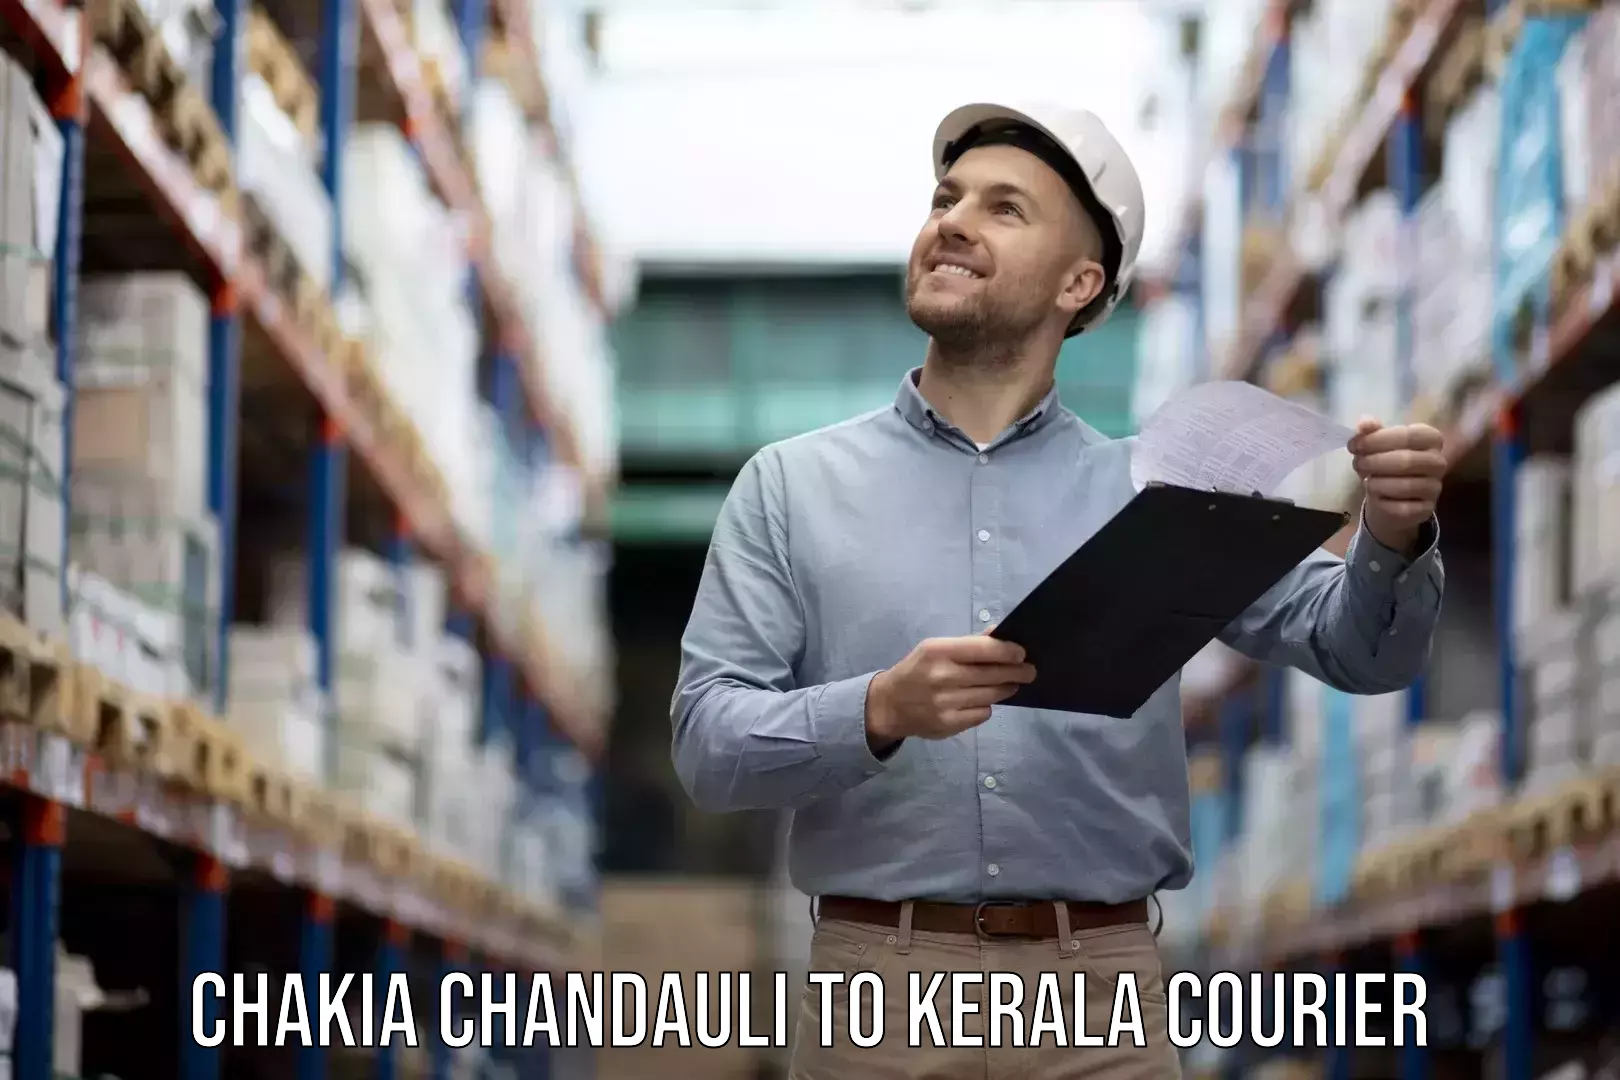 Furniture relocation experts Chakia Chandauli to Palakkad